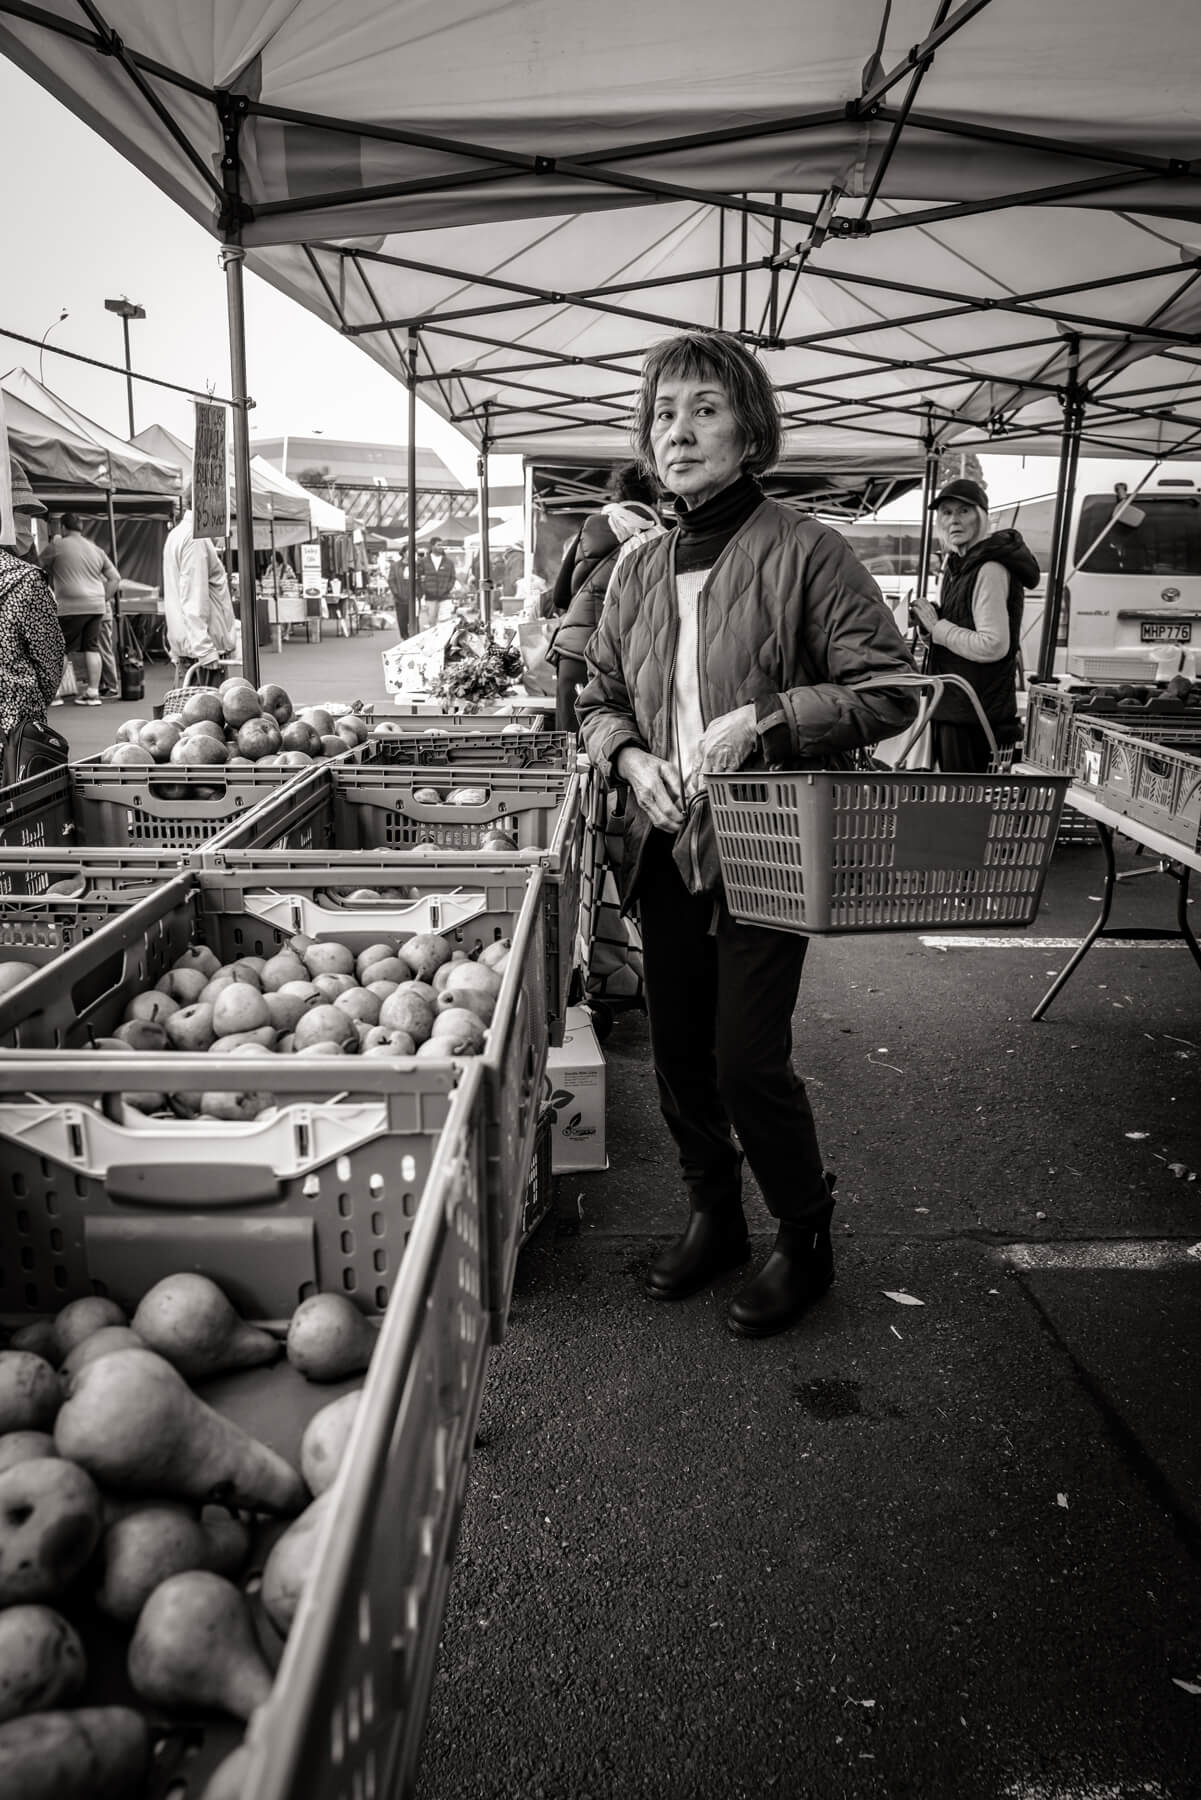 Takapuna Farmers Market on Sunday